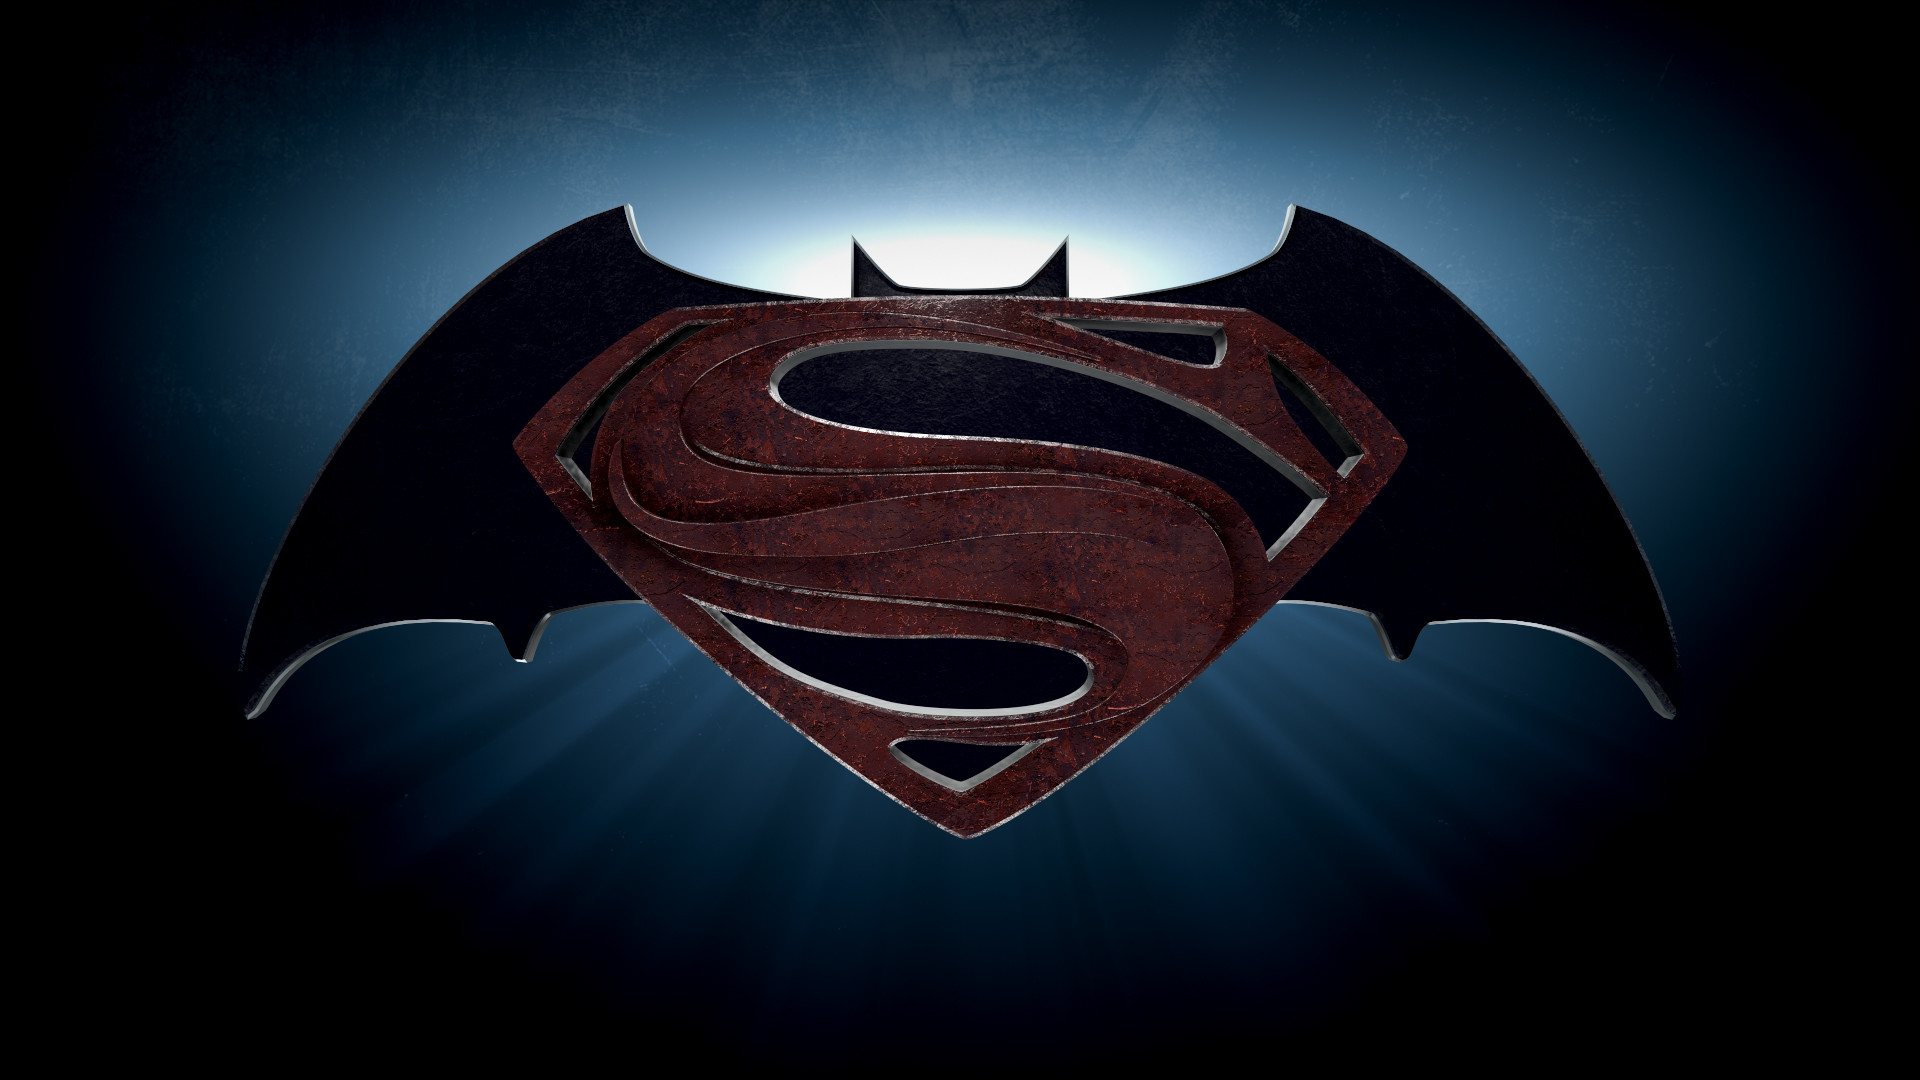 Batman Vs Superman Logo Png - wallpaper.